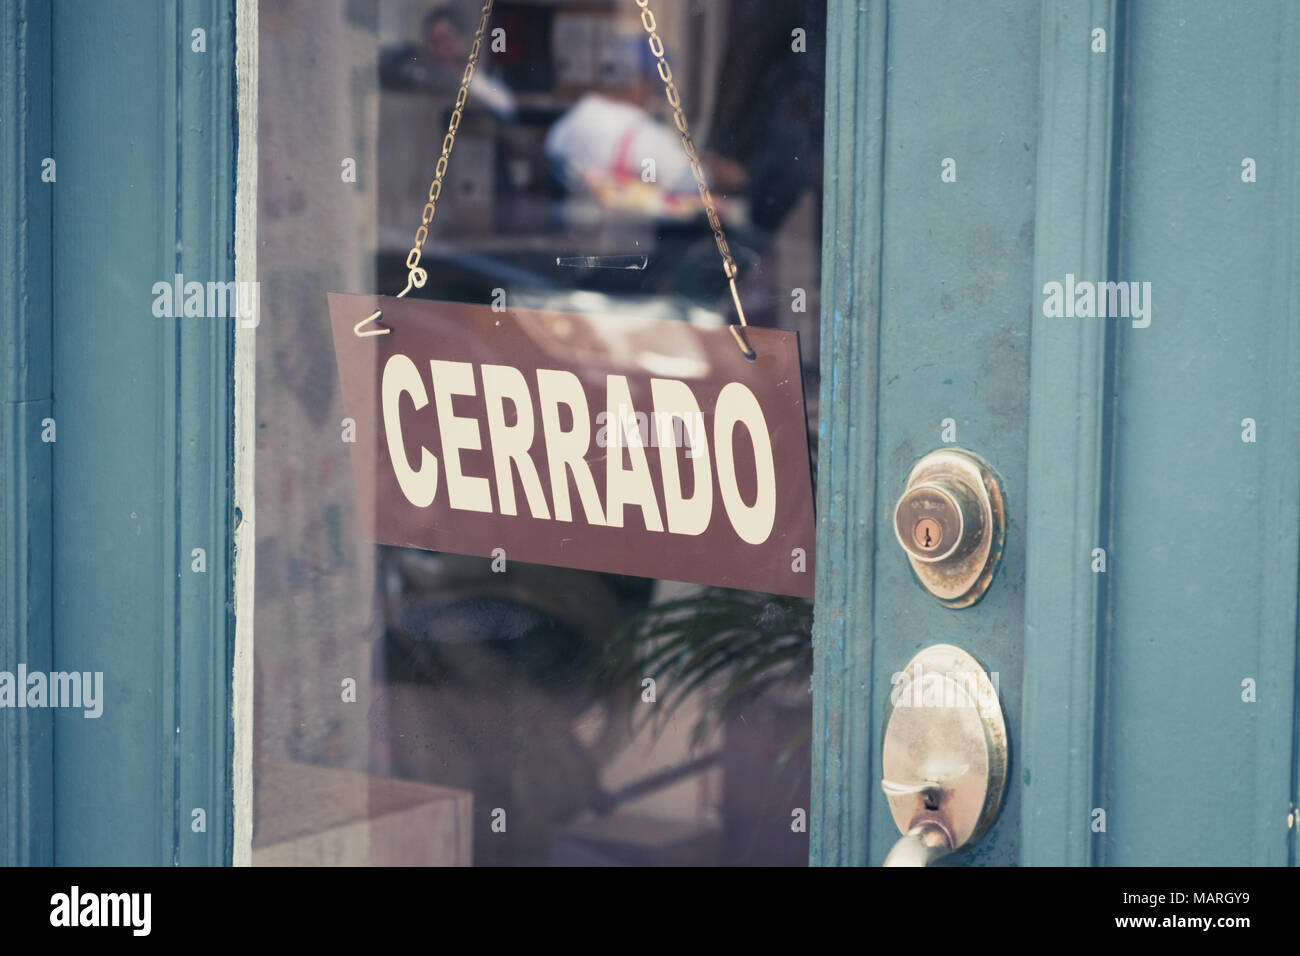 Cerrado (closed) sign on door - spanish word 'cerrado' (closed) on shop entrance Stock Photo